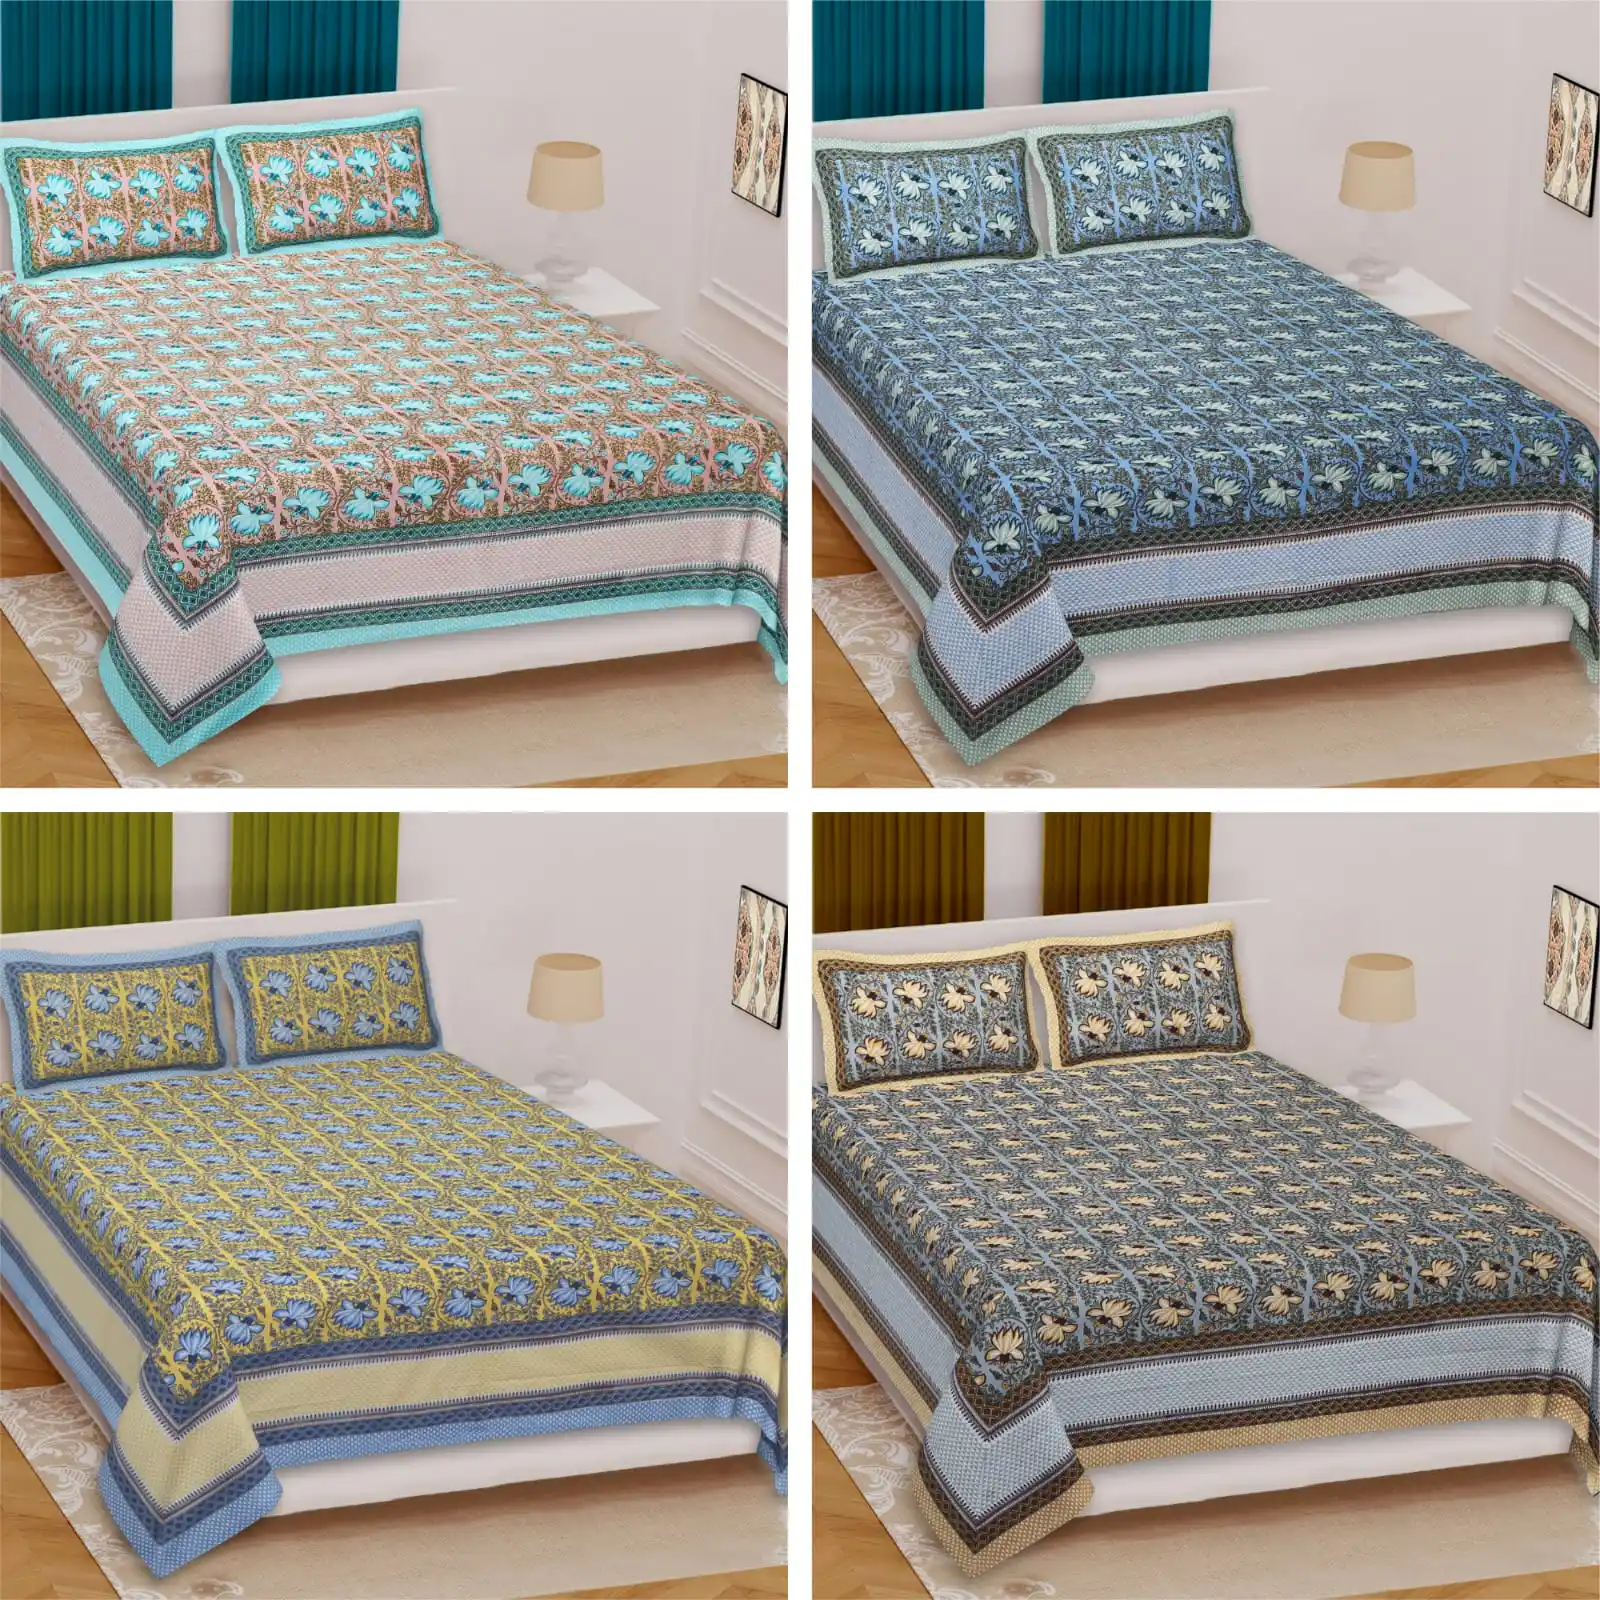 Komfortabler Schlaf: Delight's King-Size-Bettwäsche aus Reiner Baumwolle mit genähteten Seiten (93 × 108)